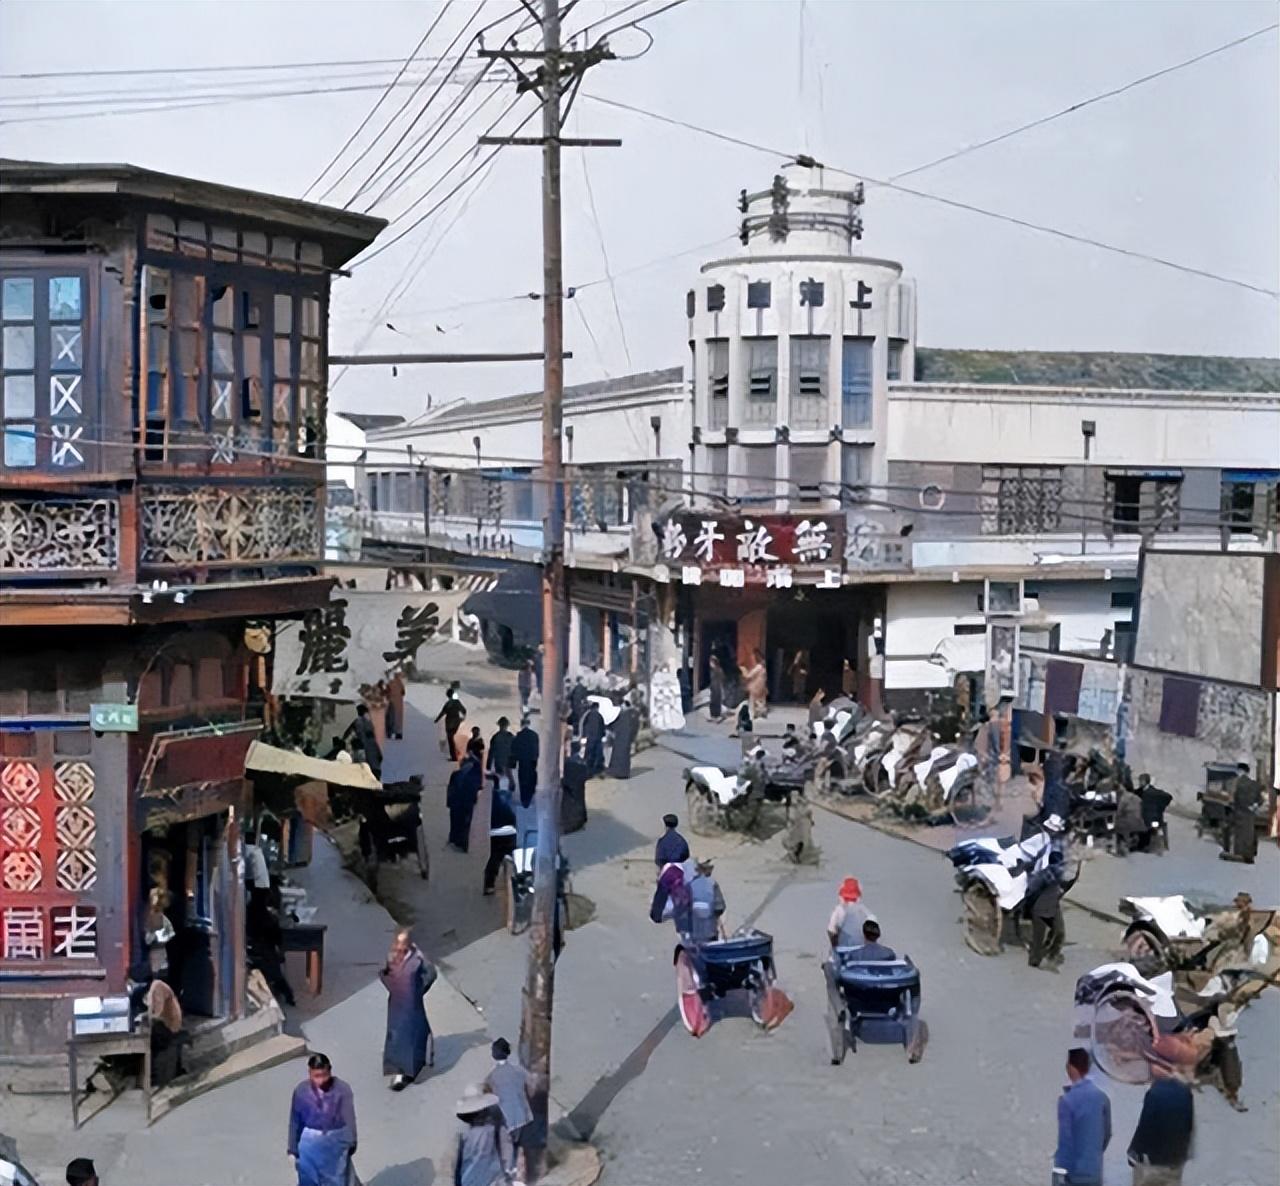 一九四零年六朝金粉之地，繁华依旧的南京城